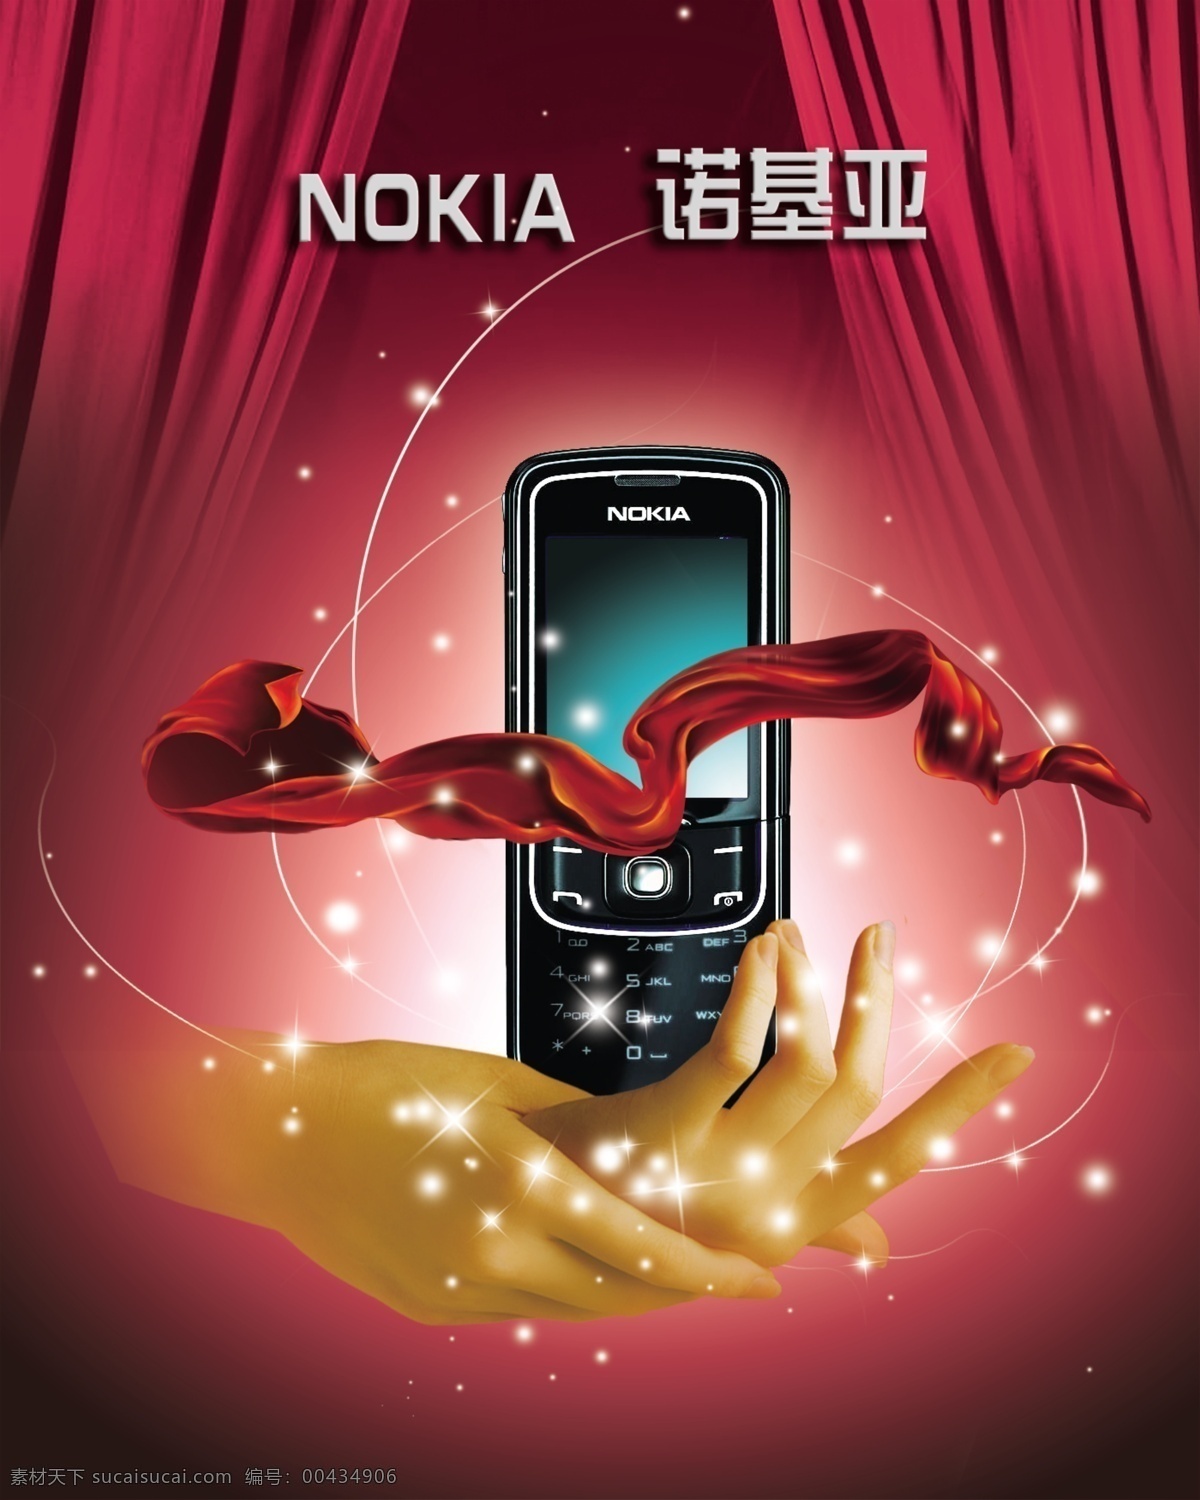 诺基亚 手机 广告 诺基亚手机 诺基亚海报 其他海报设计